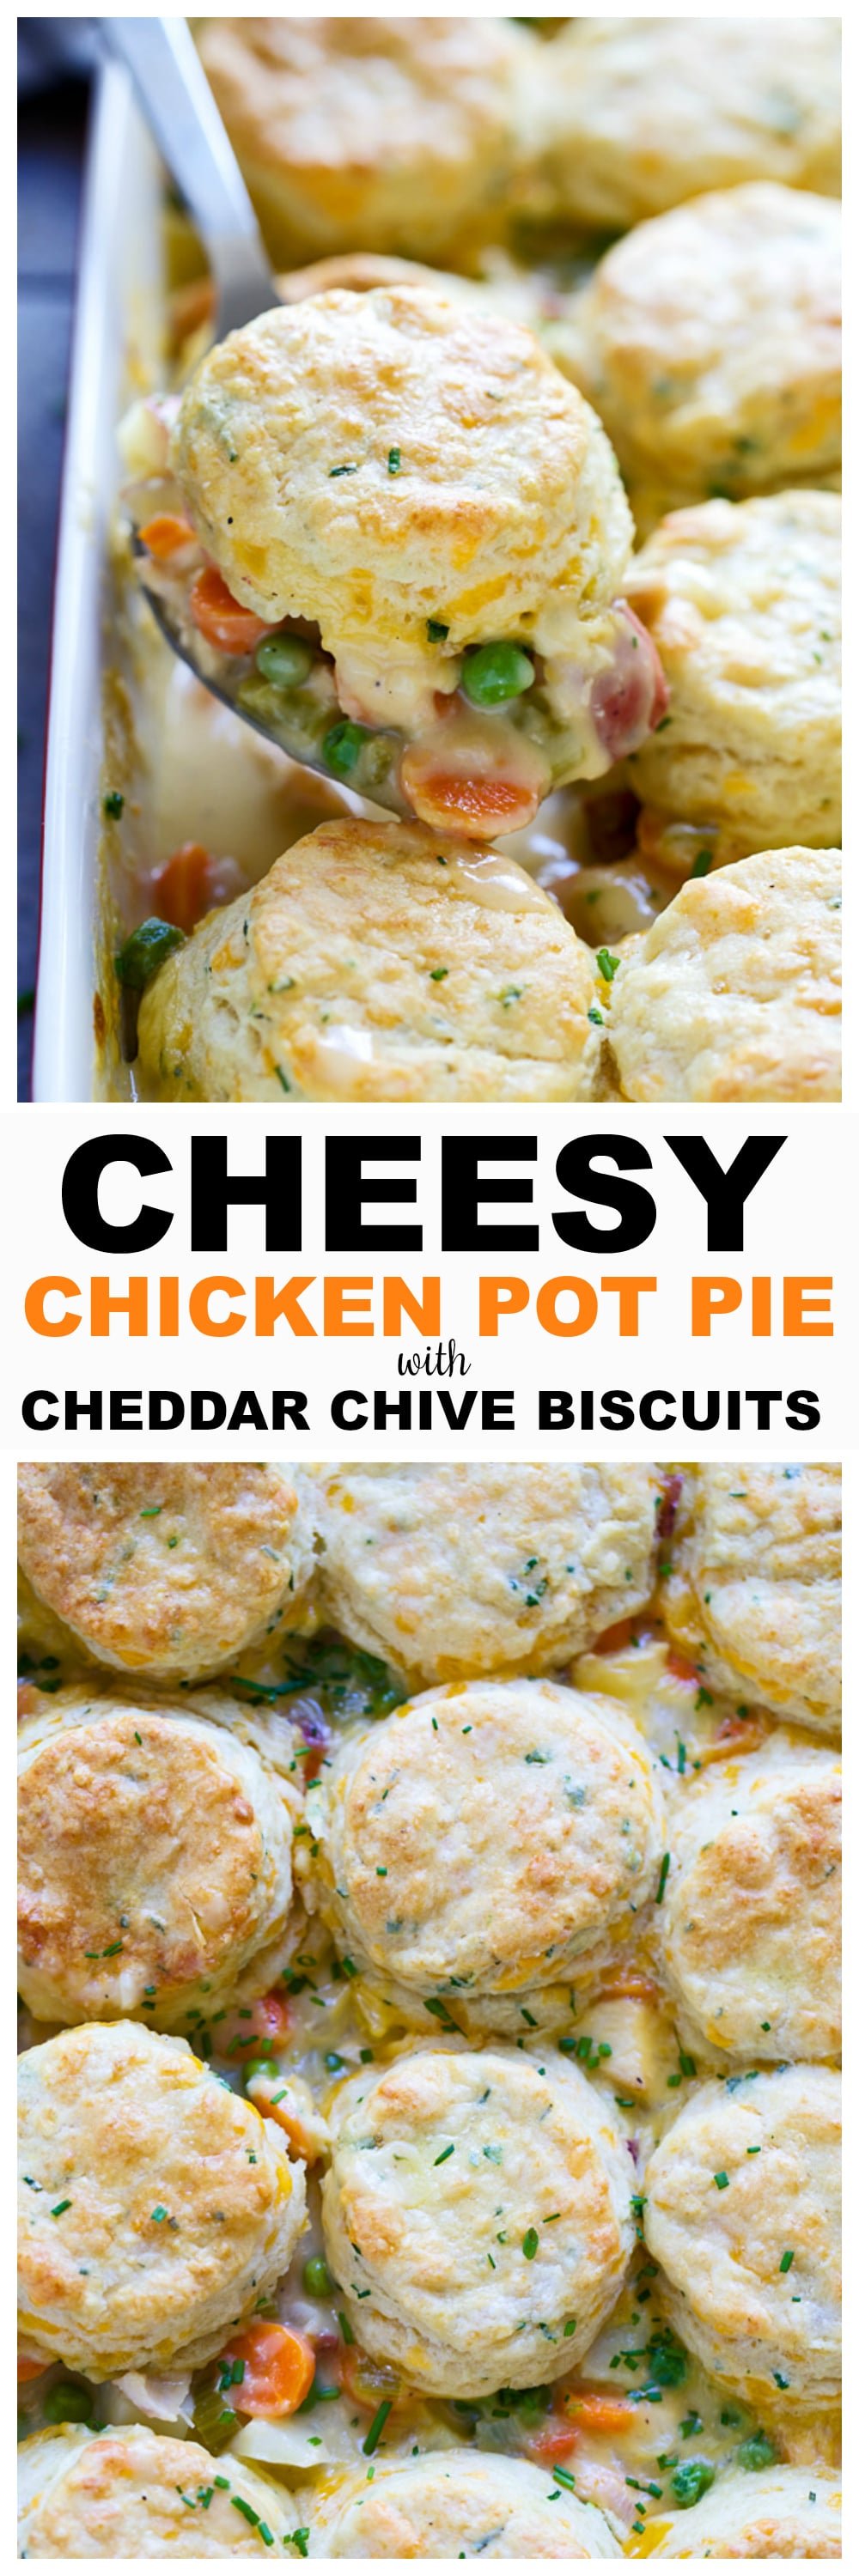 Cheesy Chicken Pot Pie with Cheddar Chive Biscuits - The BEST chicken pot pie! 